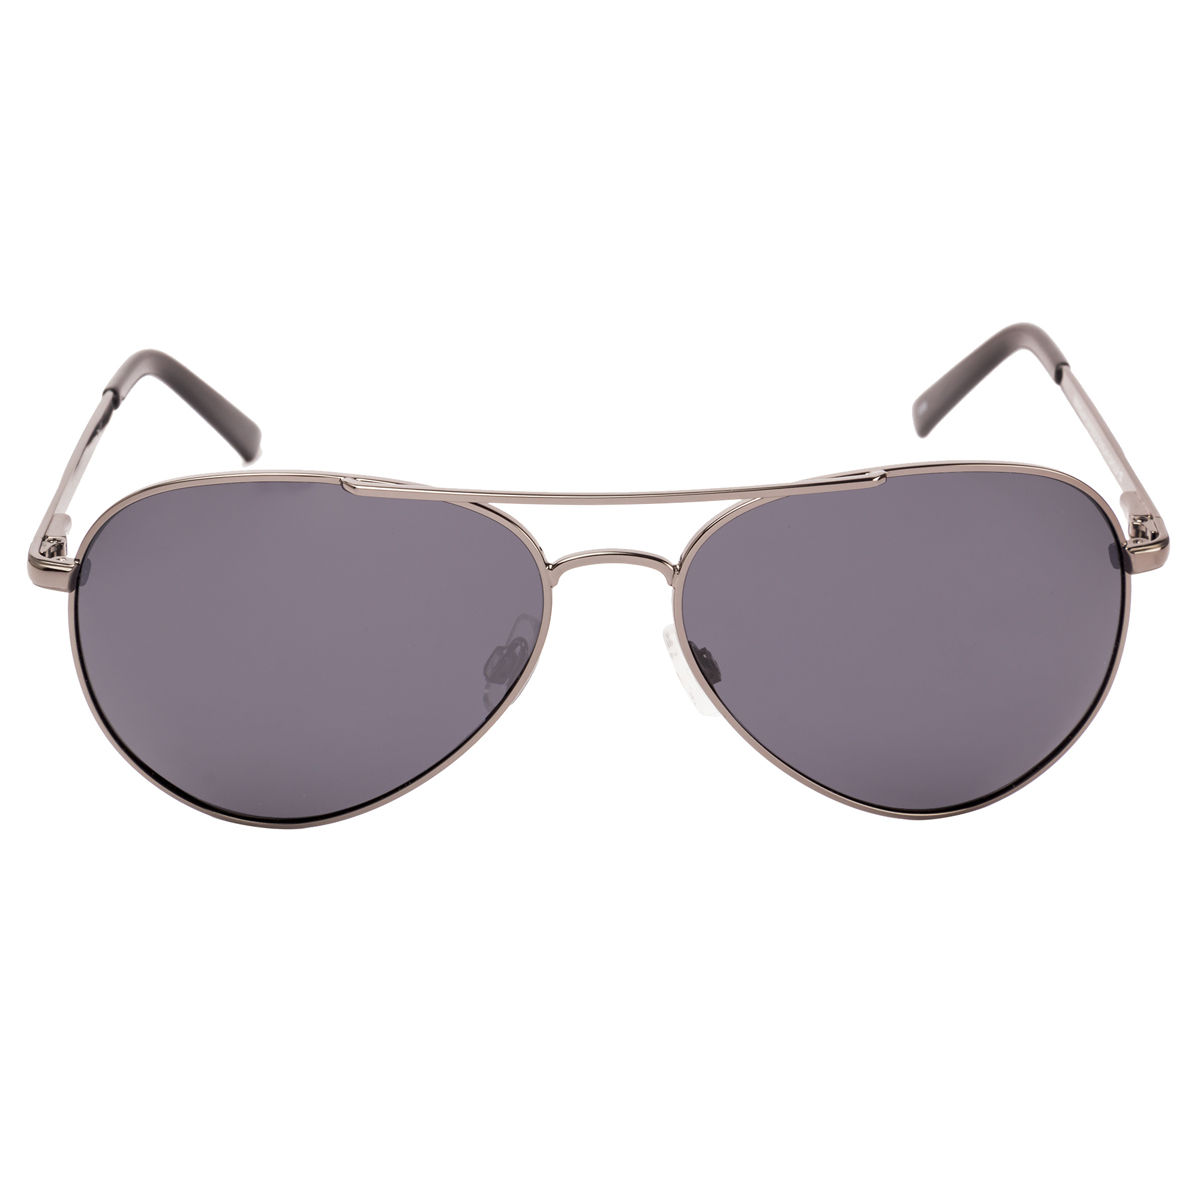 Invu Sunglasses Aviator With Grey Lens For Men